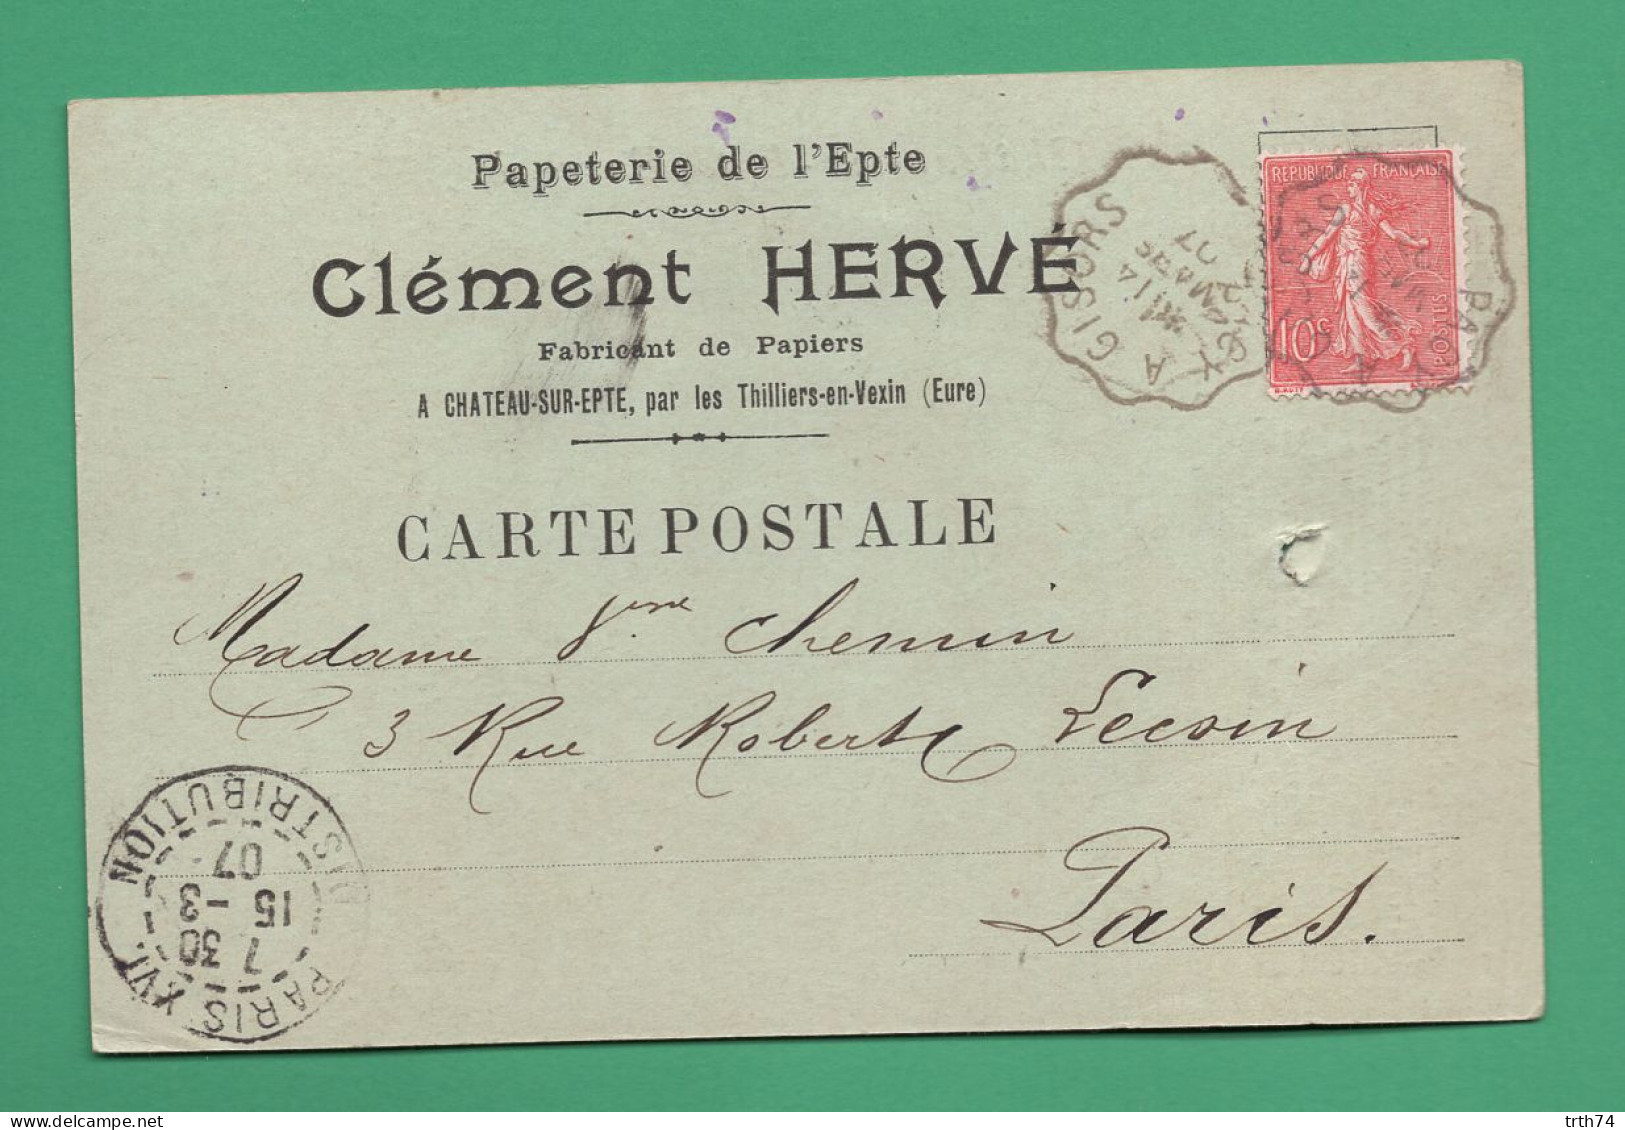 Cachet Convoyeur Pacy à Gisors 27 ( Eure ) Château Sur Epte Par Thilliers En Vexin Hervé Clément Papeterie 1907 - Manual Postmarks